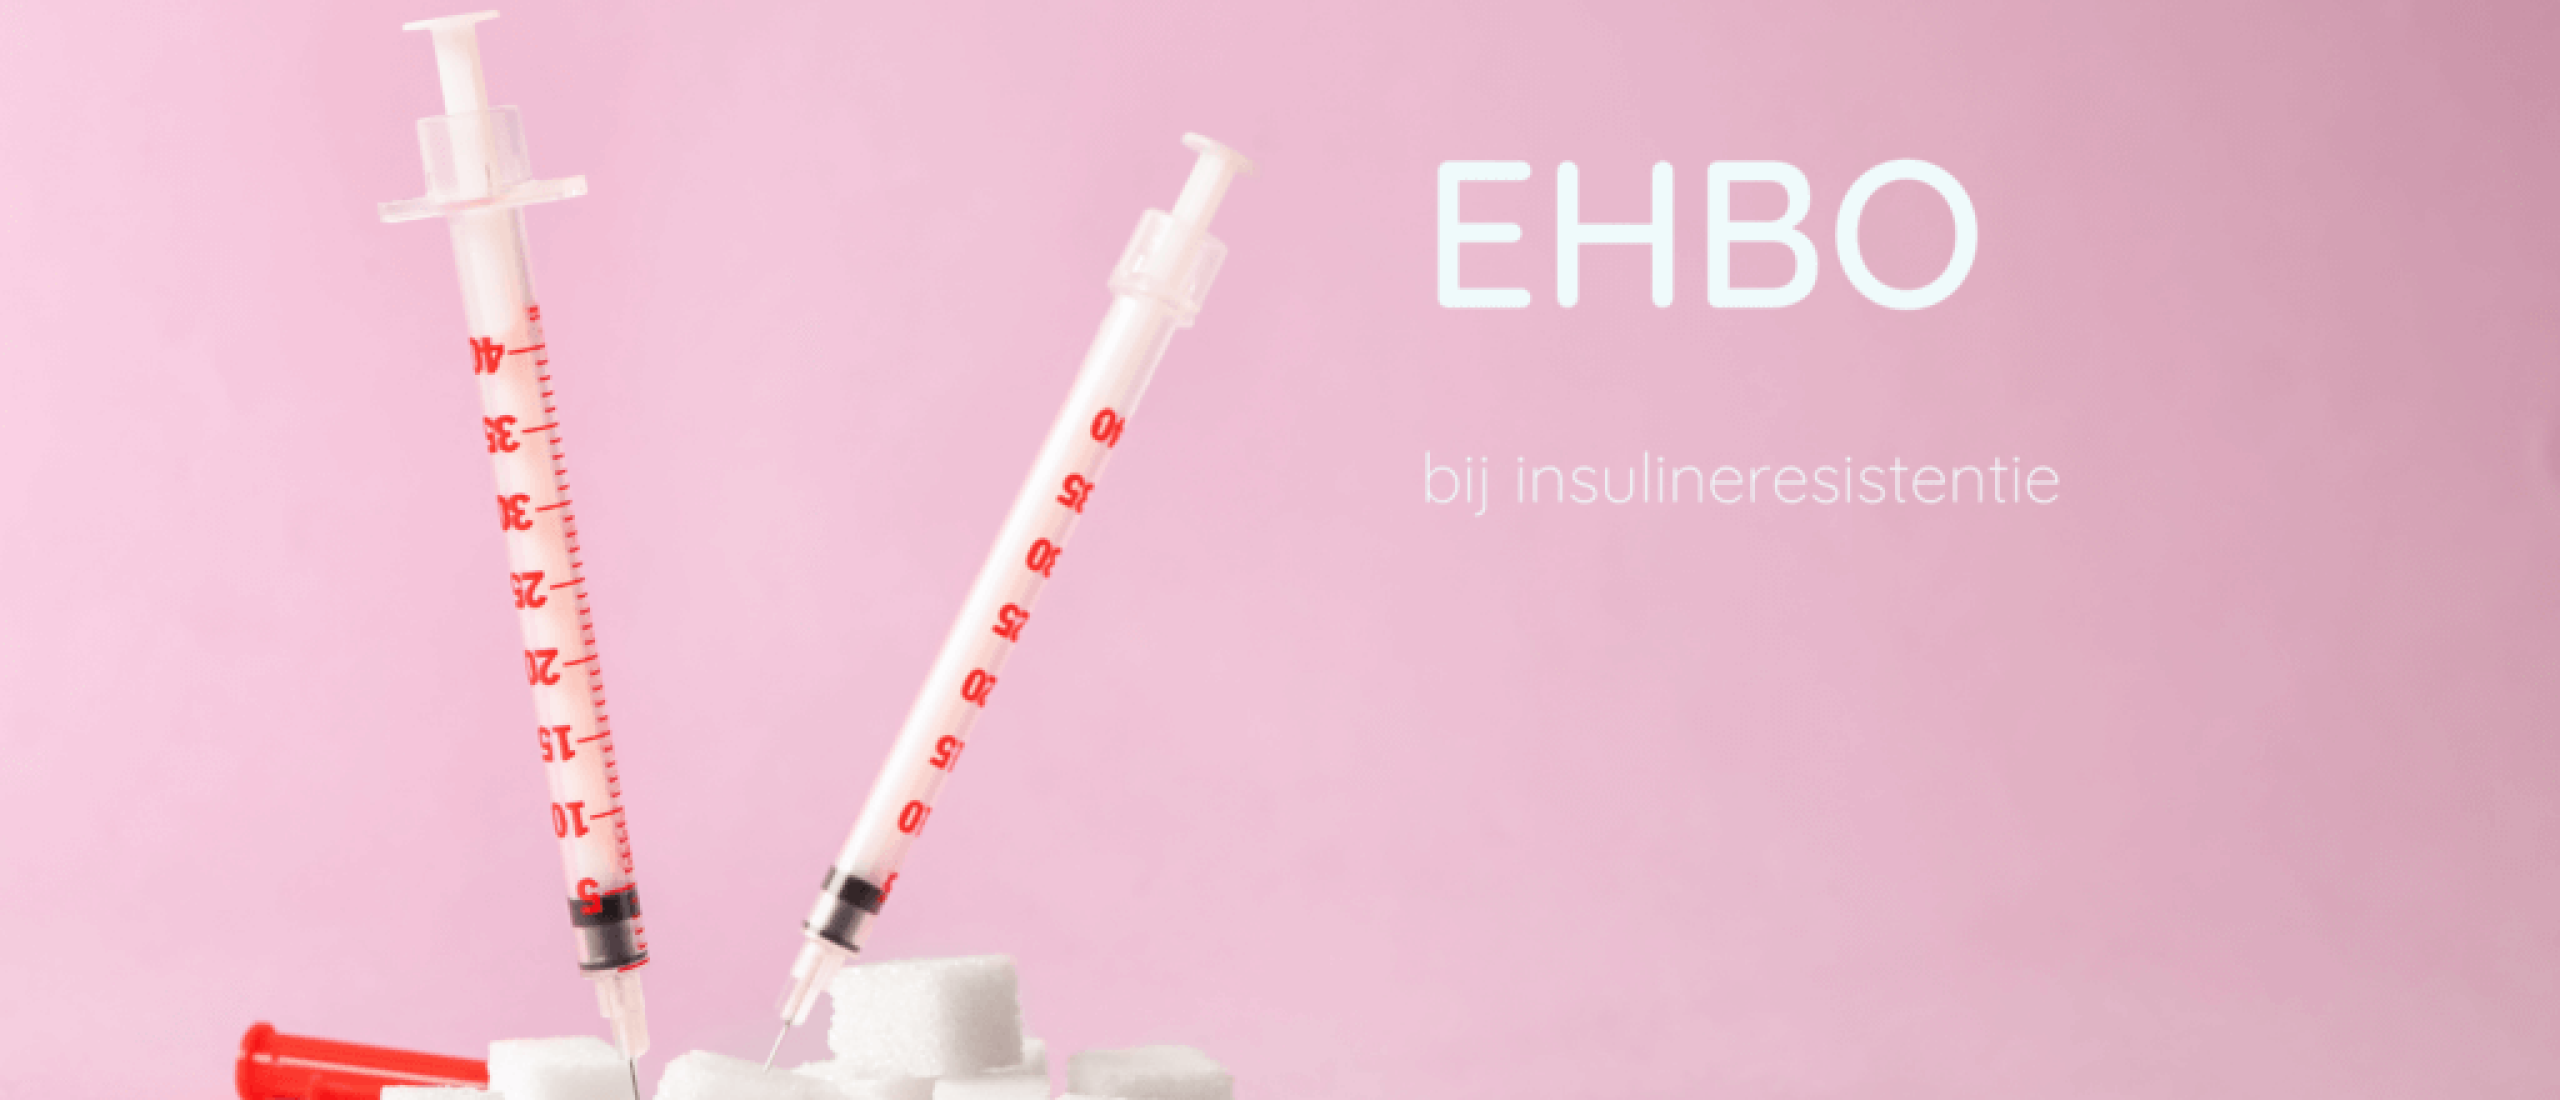 EHBO bij insulineresistentie en PCOS